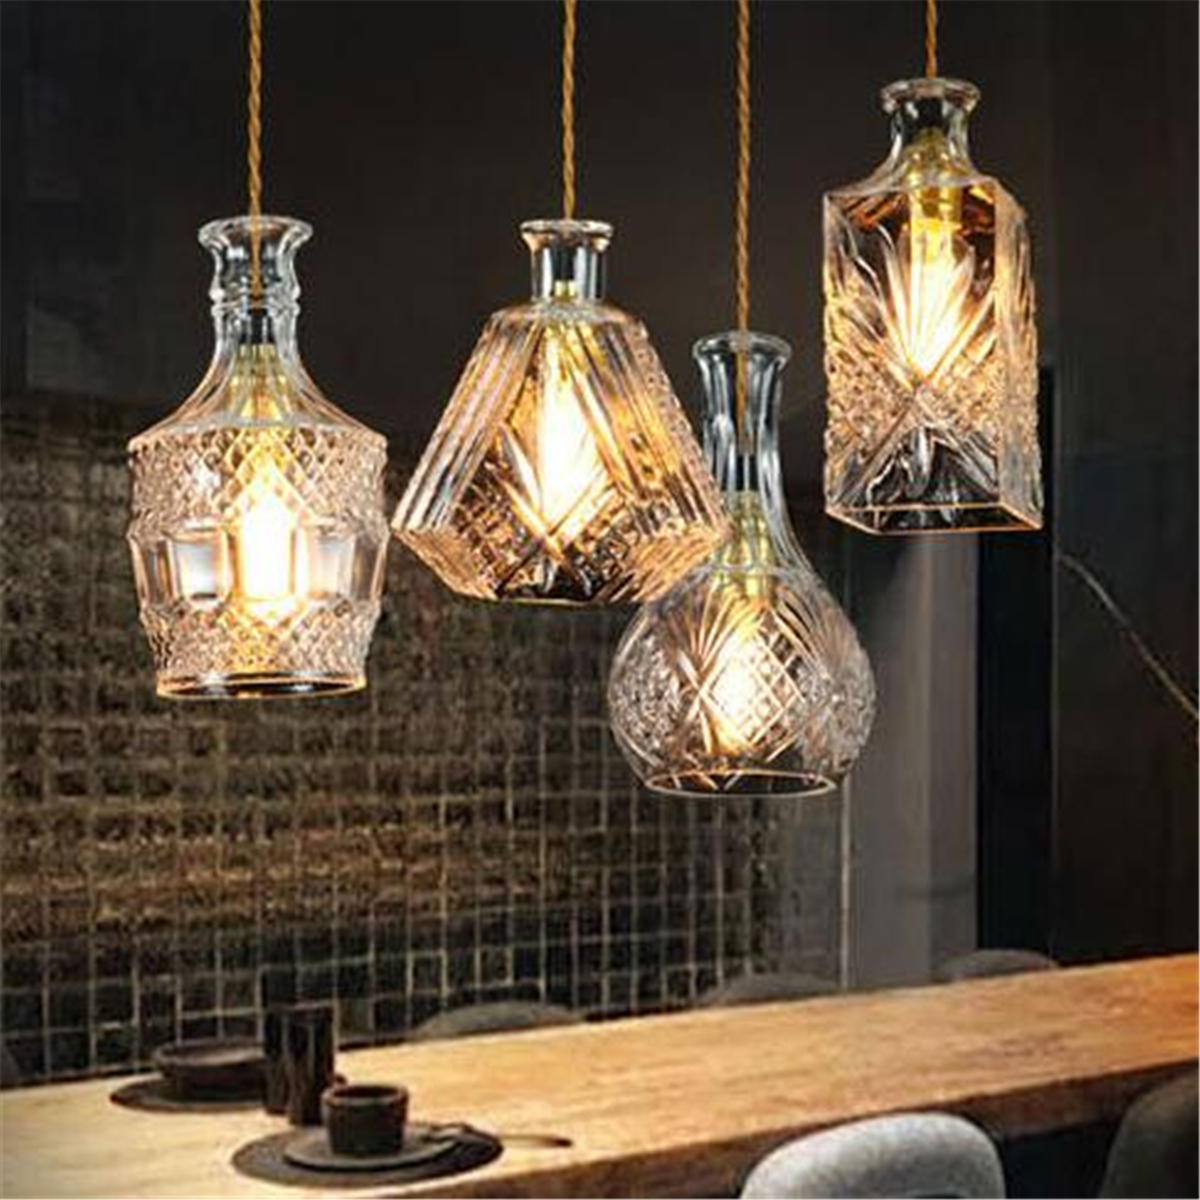 Vintage-Decanter-Bottle-Pendant-Ceiling-Light-Chandelier-Lamp-Fixture-Home-Decor-1634446-5